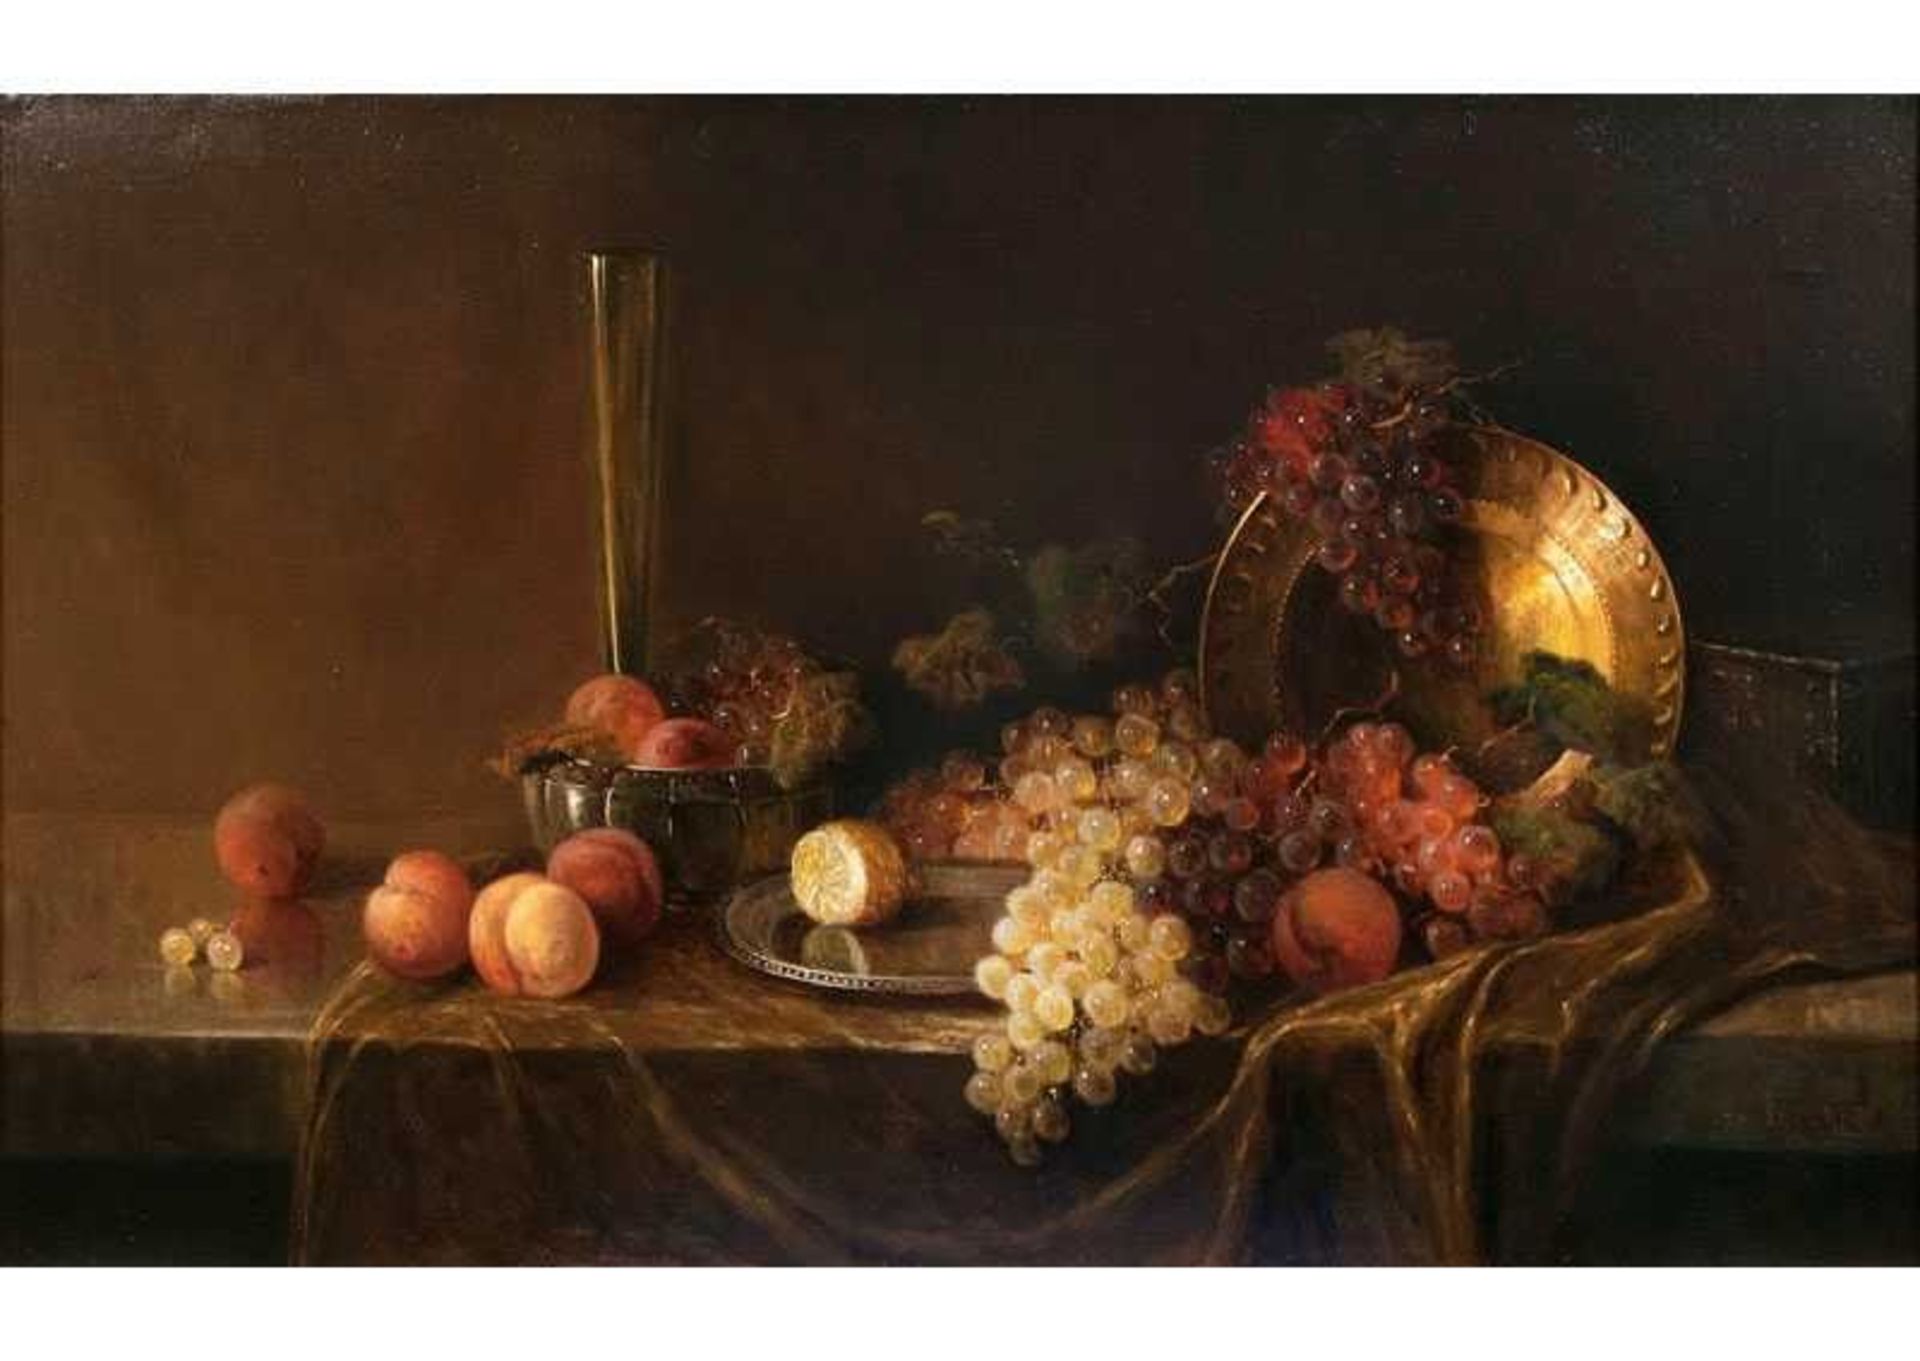 R. Eckardt tätig um 1900 Tafelstilleben mit Früchten Öl/Lw., 62,5 x 100 cm, r. u. sign. R.